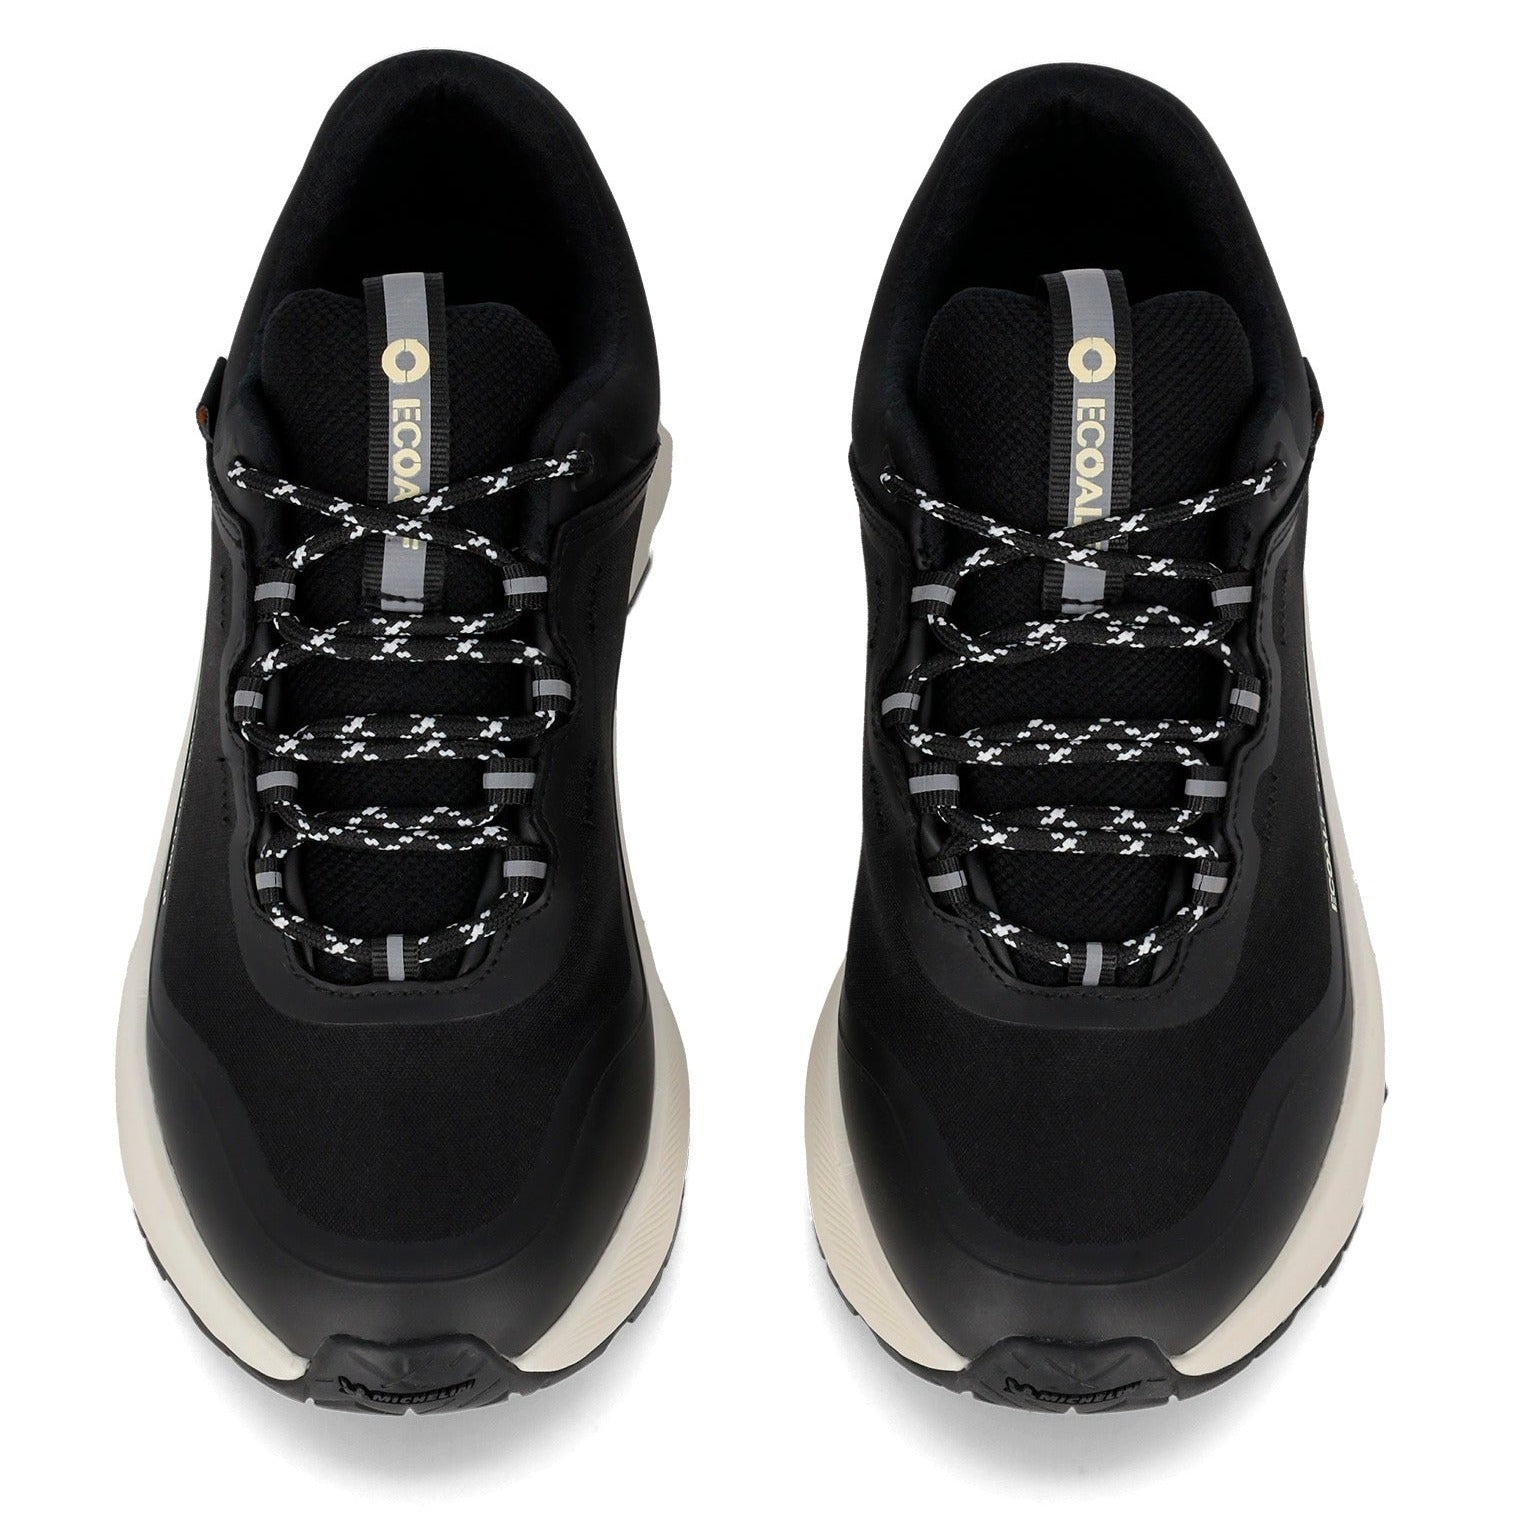 Sneakers De La Marca Ecoalf Para Mujer Modelo Abantos Black En Color Negro